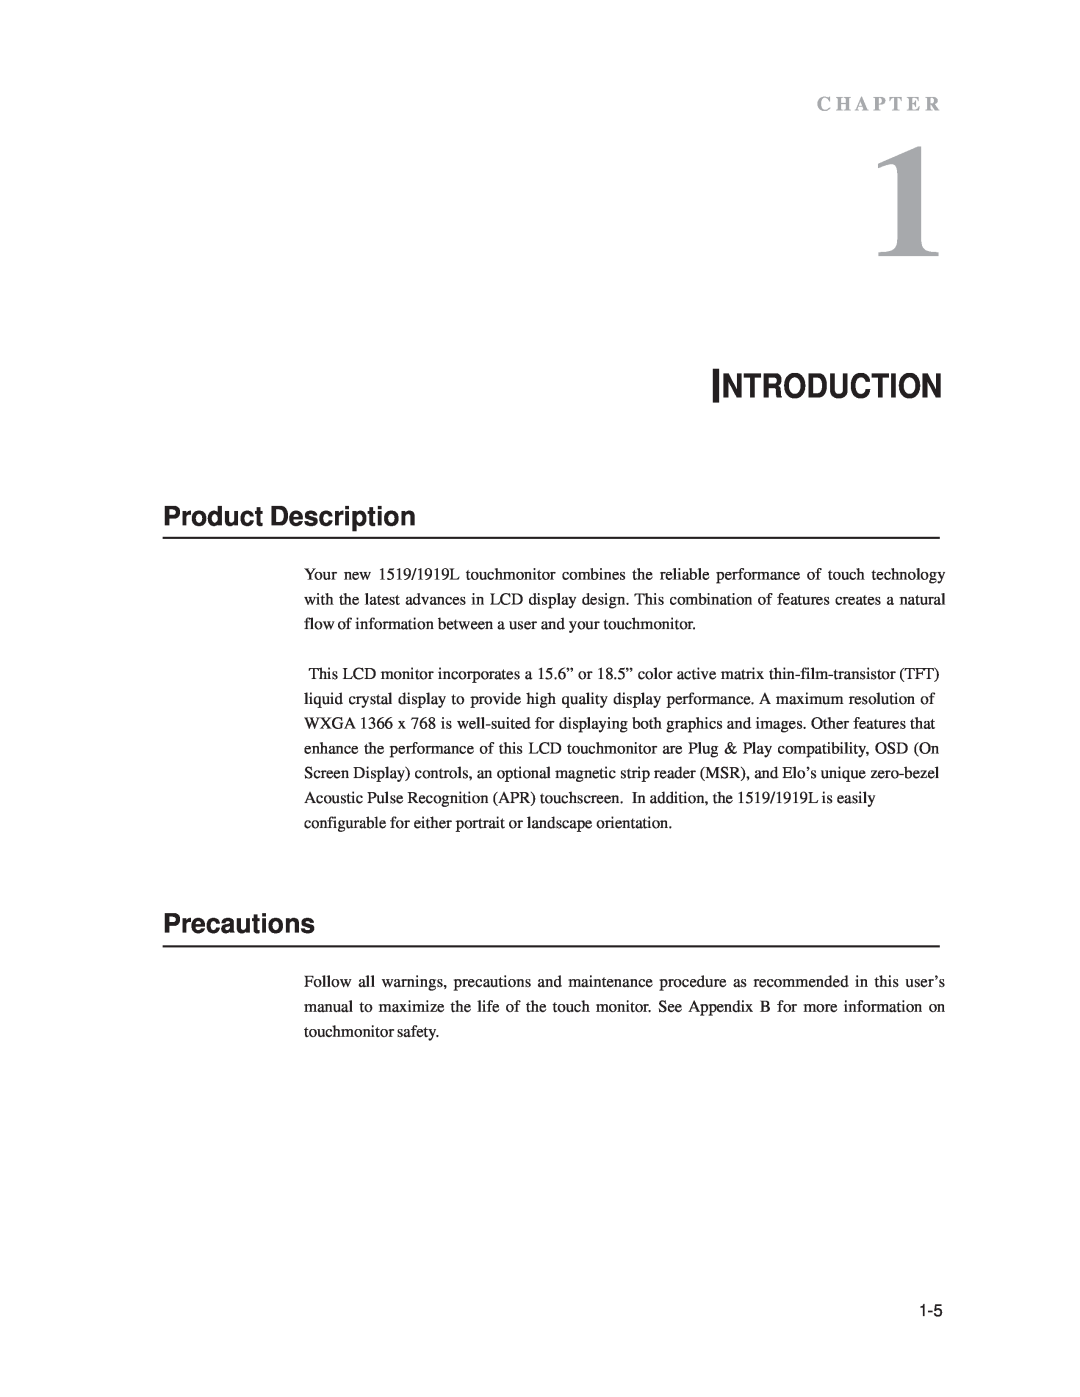 Elo TouchSystems 1519L, 1919L manual Introduction, Product Description, Precautions, C H A P T E R 